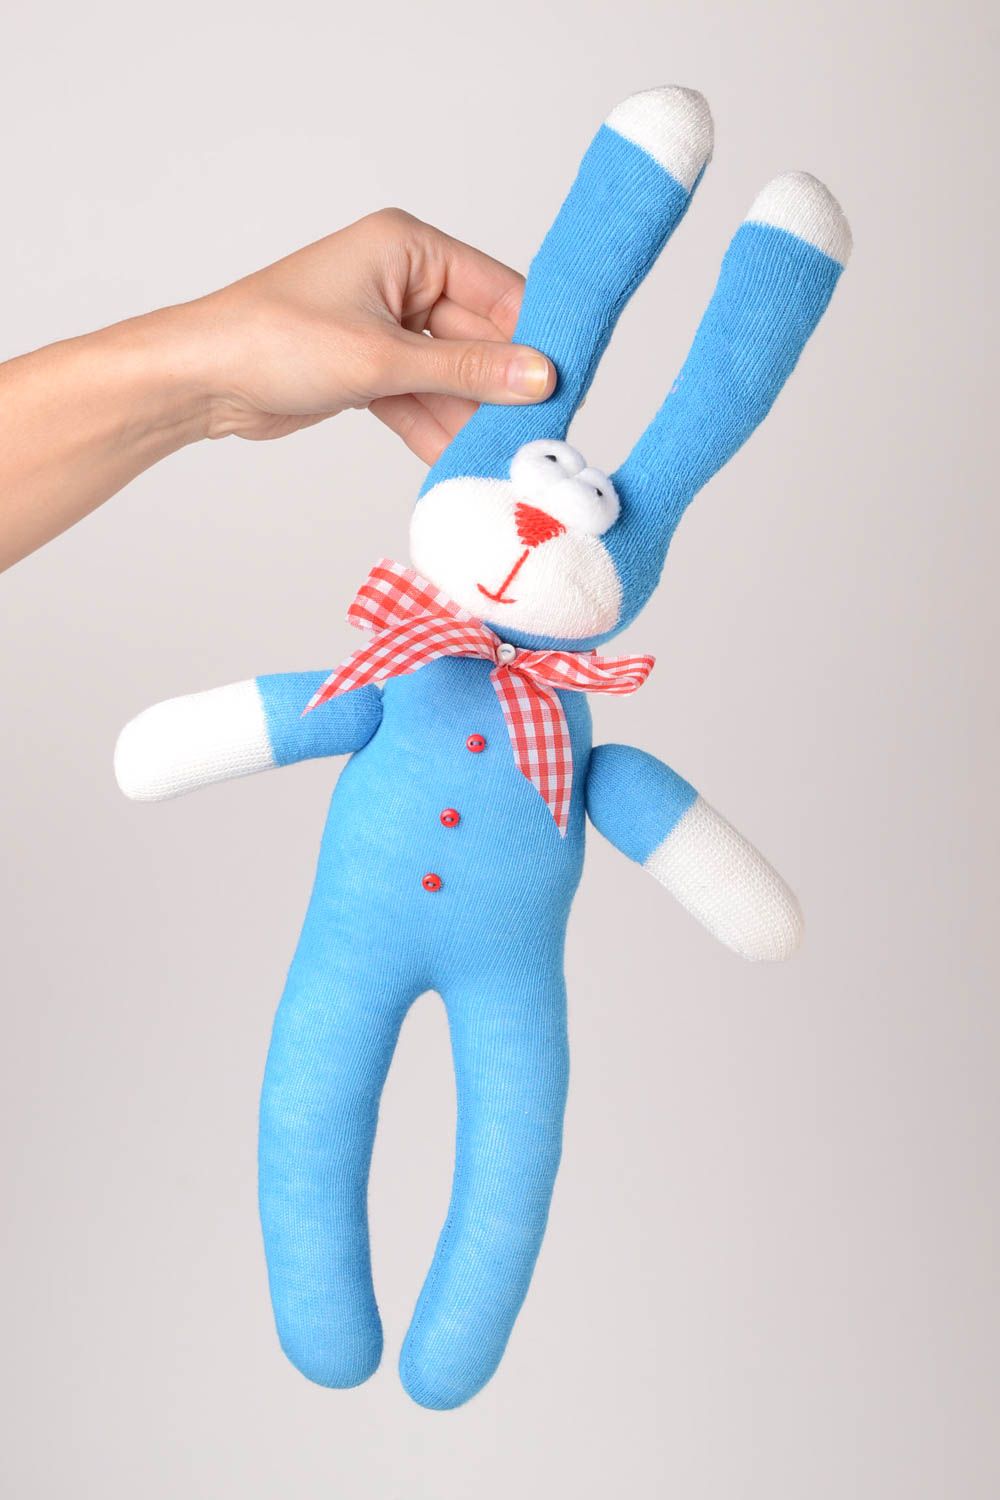 Stofftier Hase handmade Kuscheltier interessantes Kuscheliges Spielzeug blau foto 2